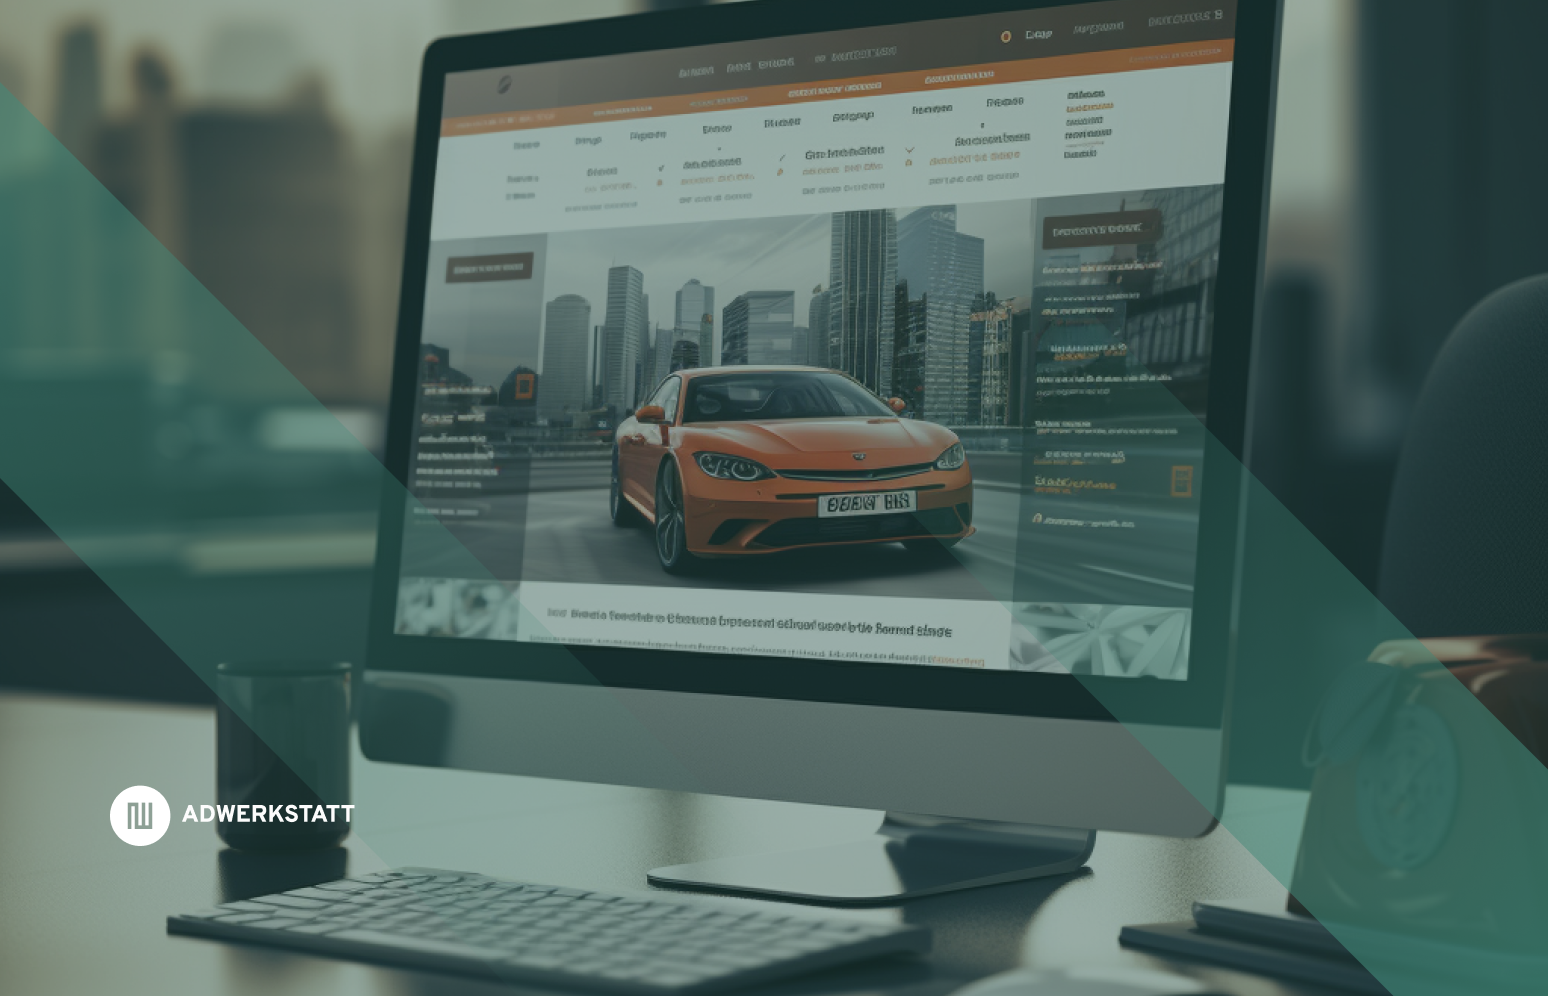 Autohaus Website mit programmatic ads